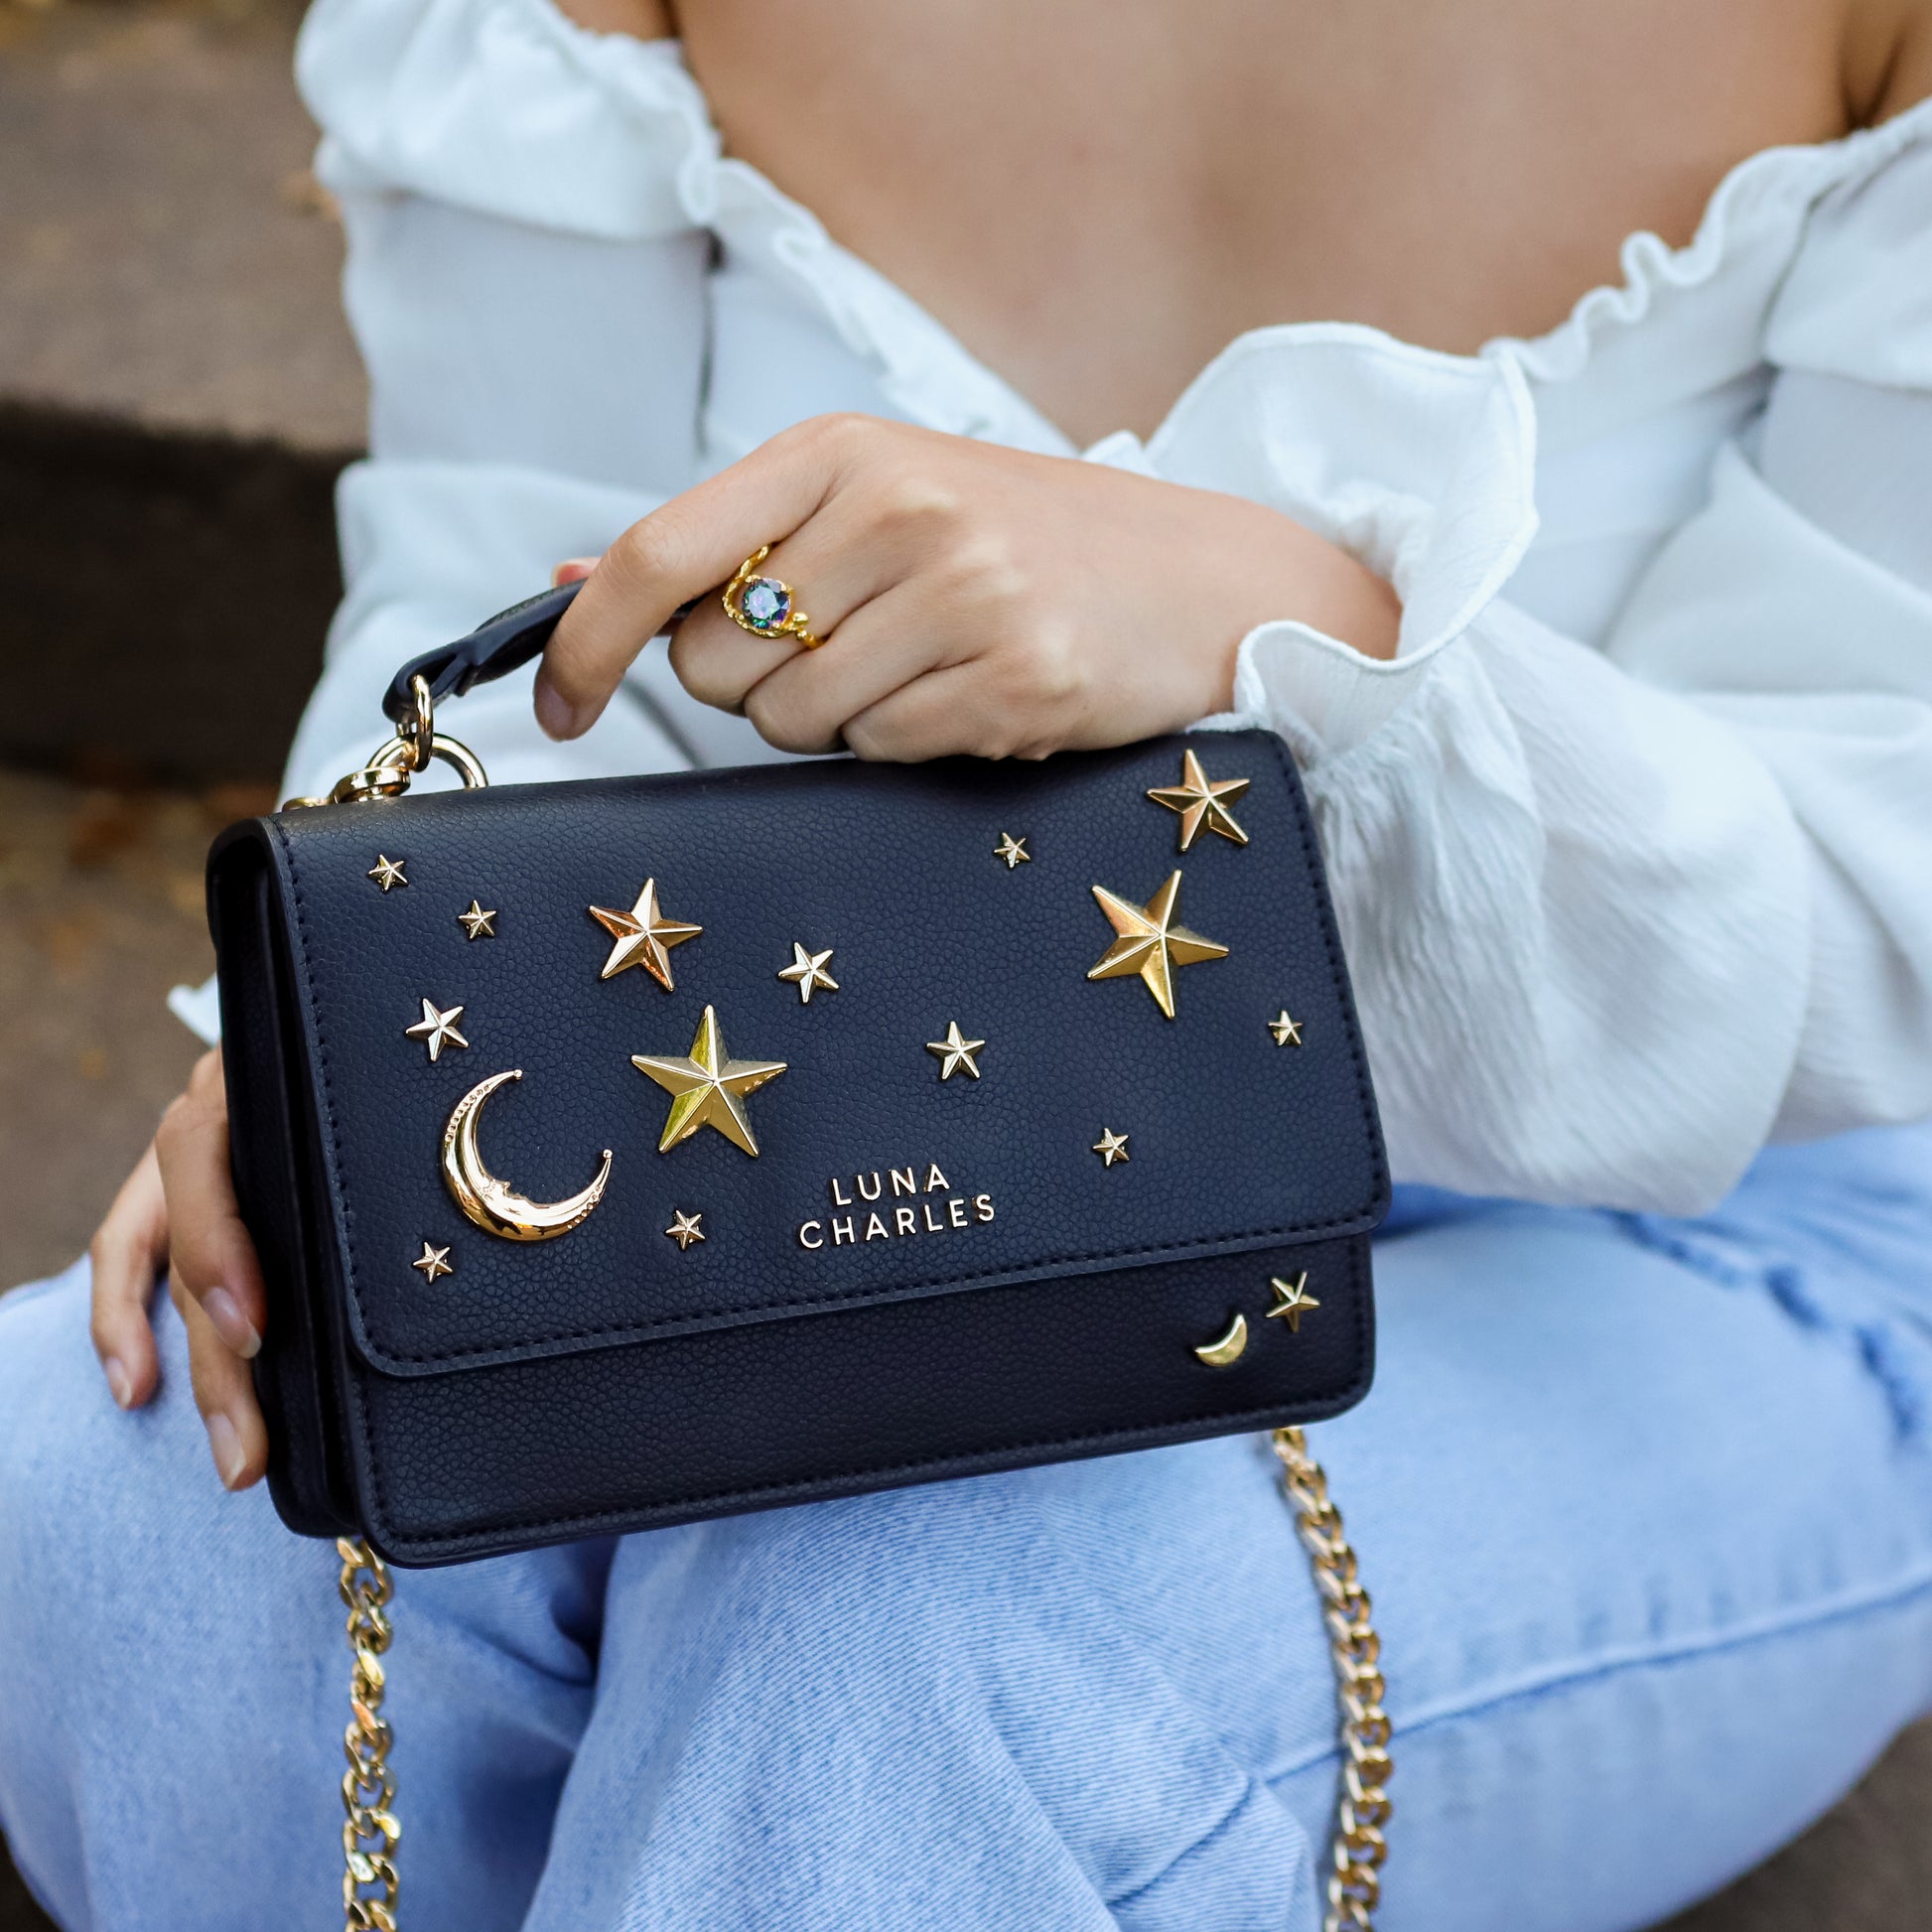 Nova Star Studded Handbag - Black & Gold